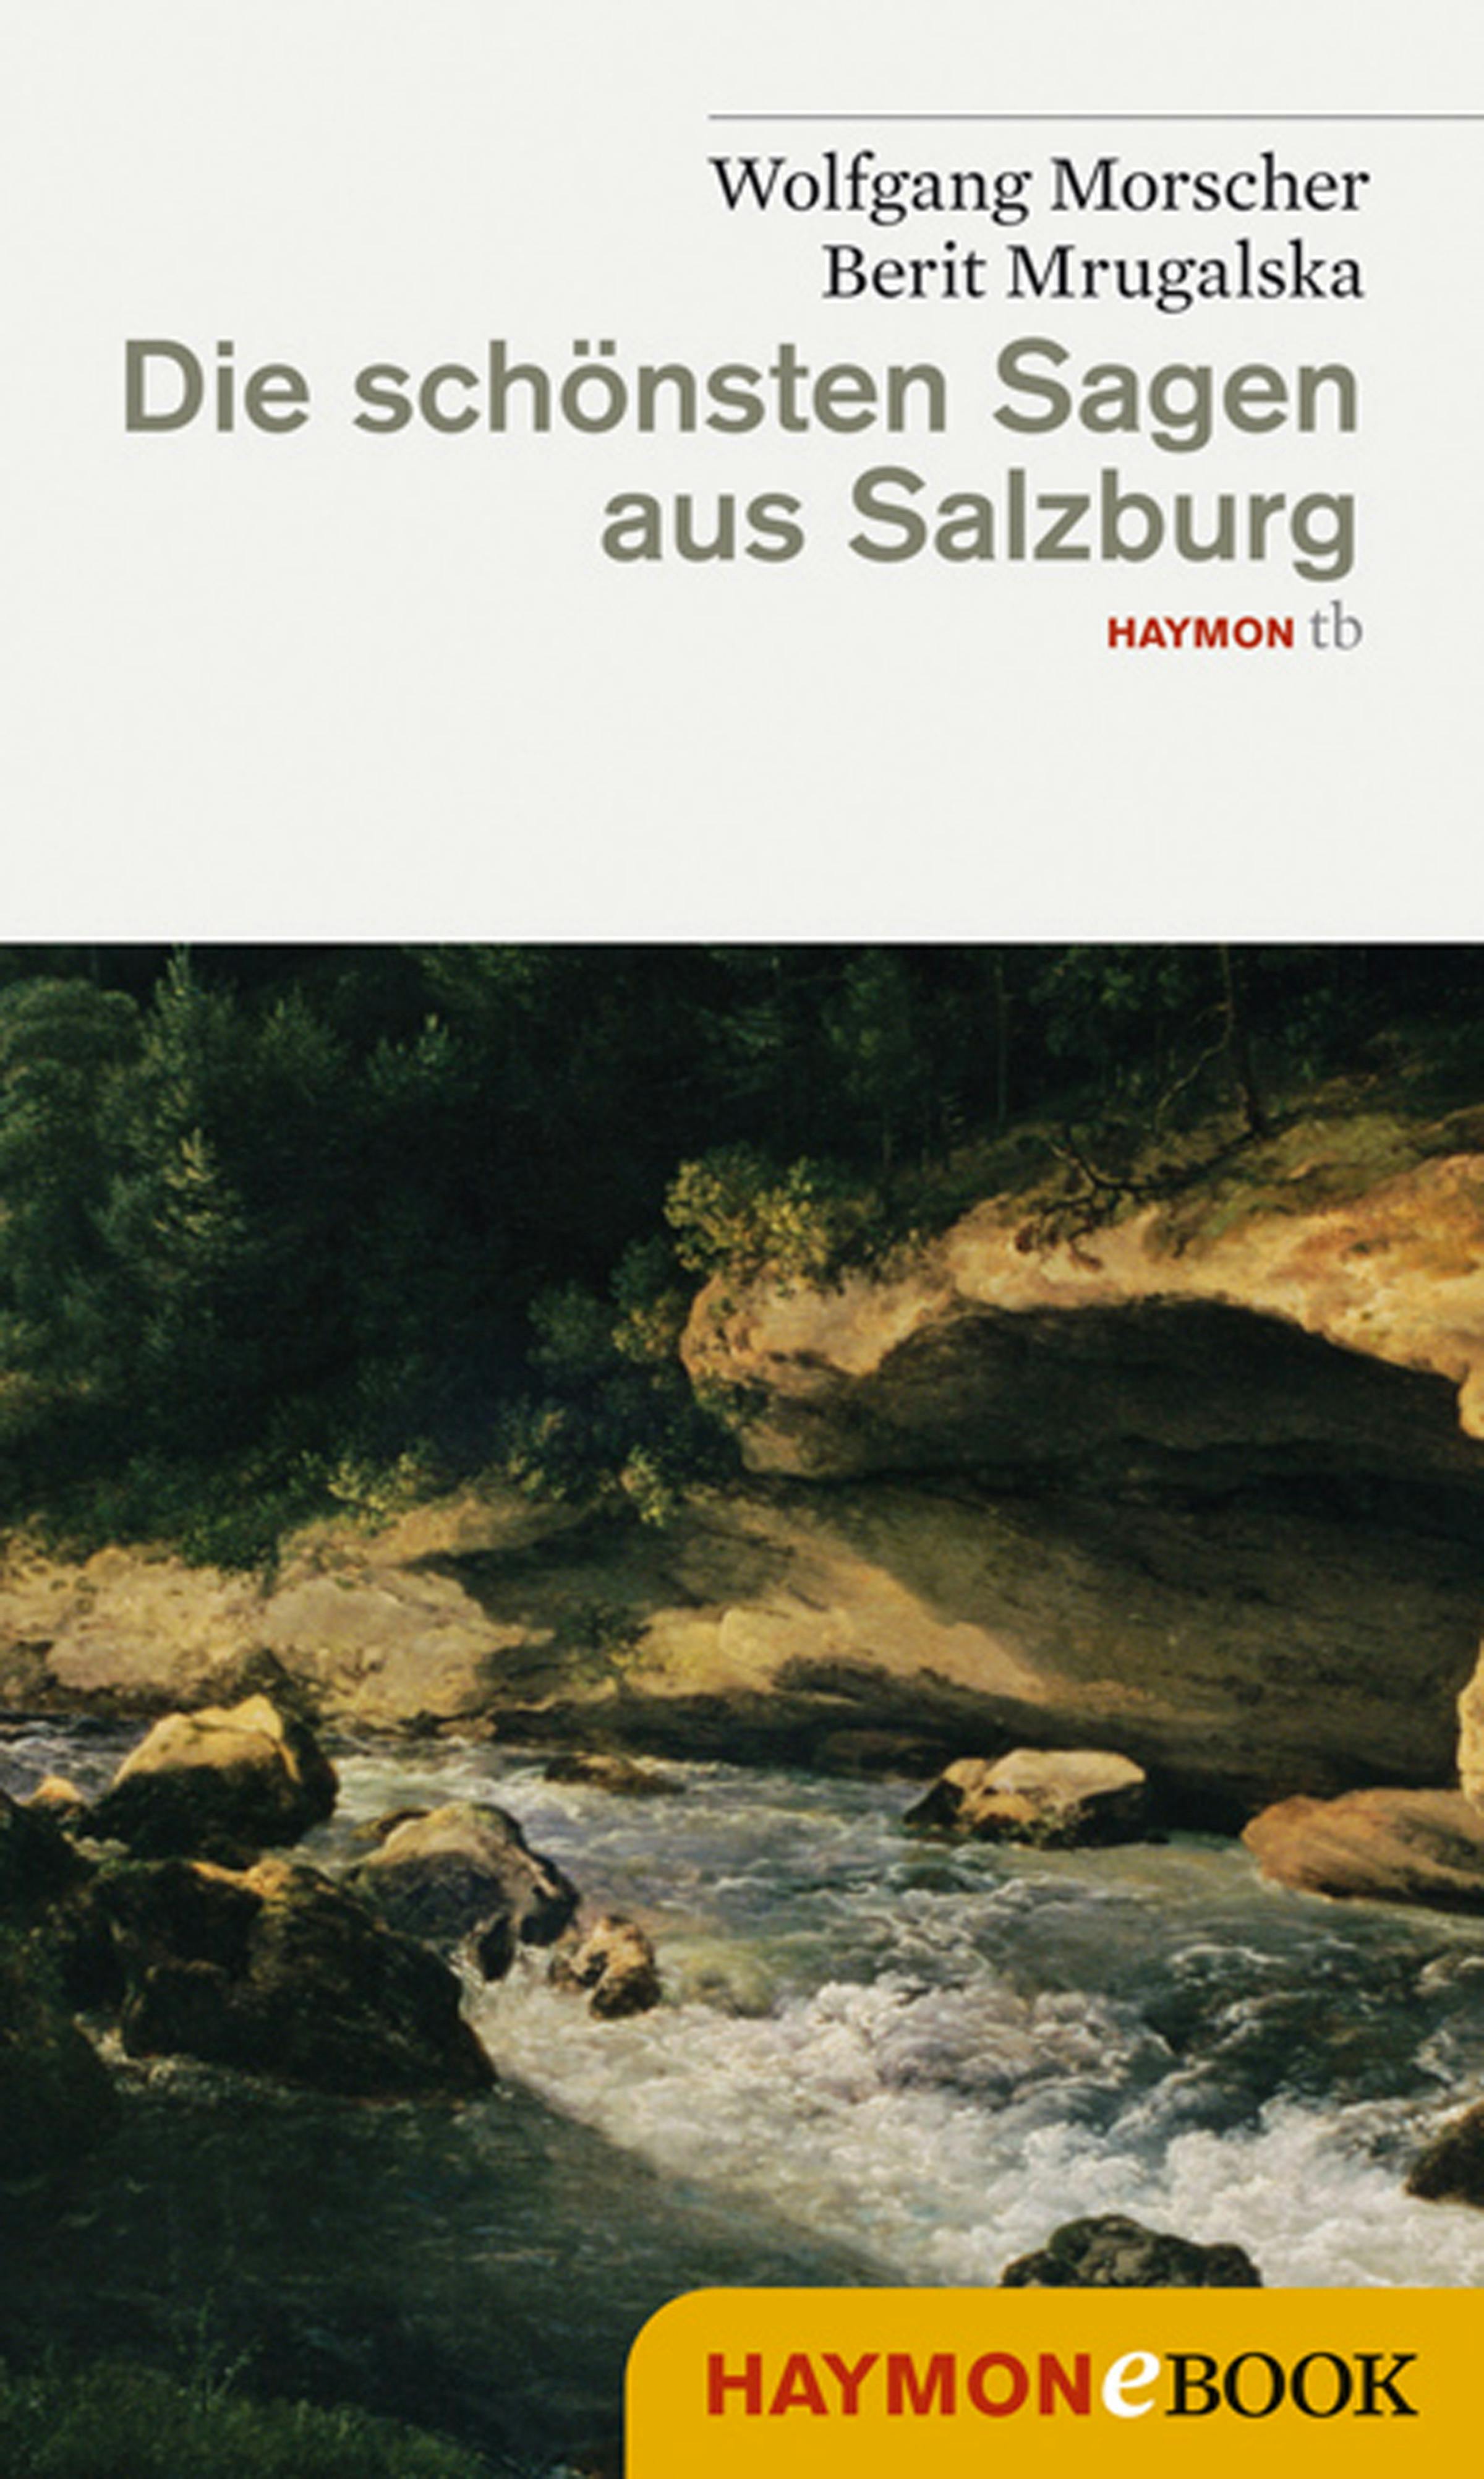 Die schönsten Sagen aus Salzburg - Wolfgang Morscher, Berit Mrugalska